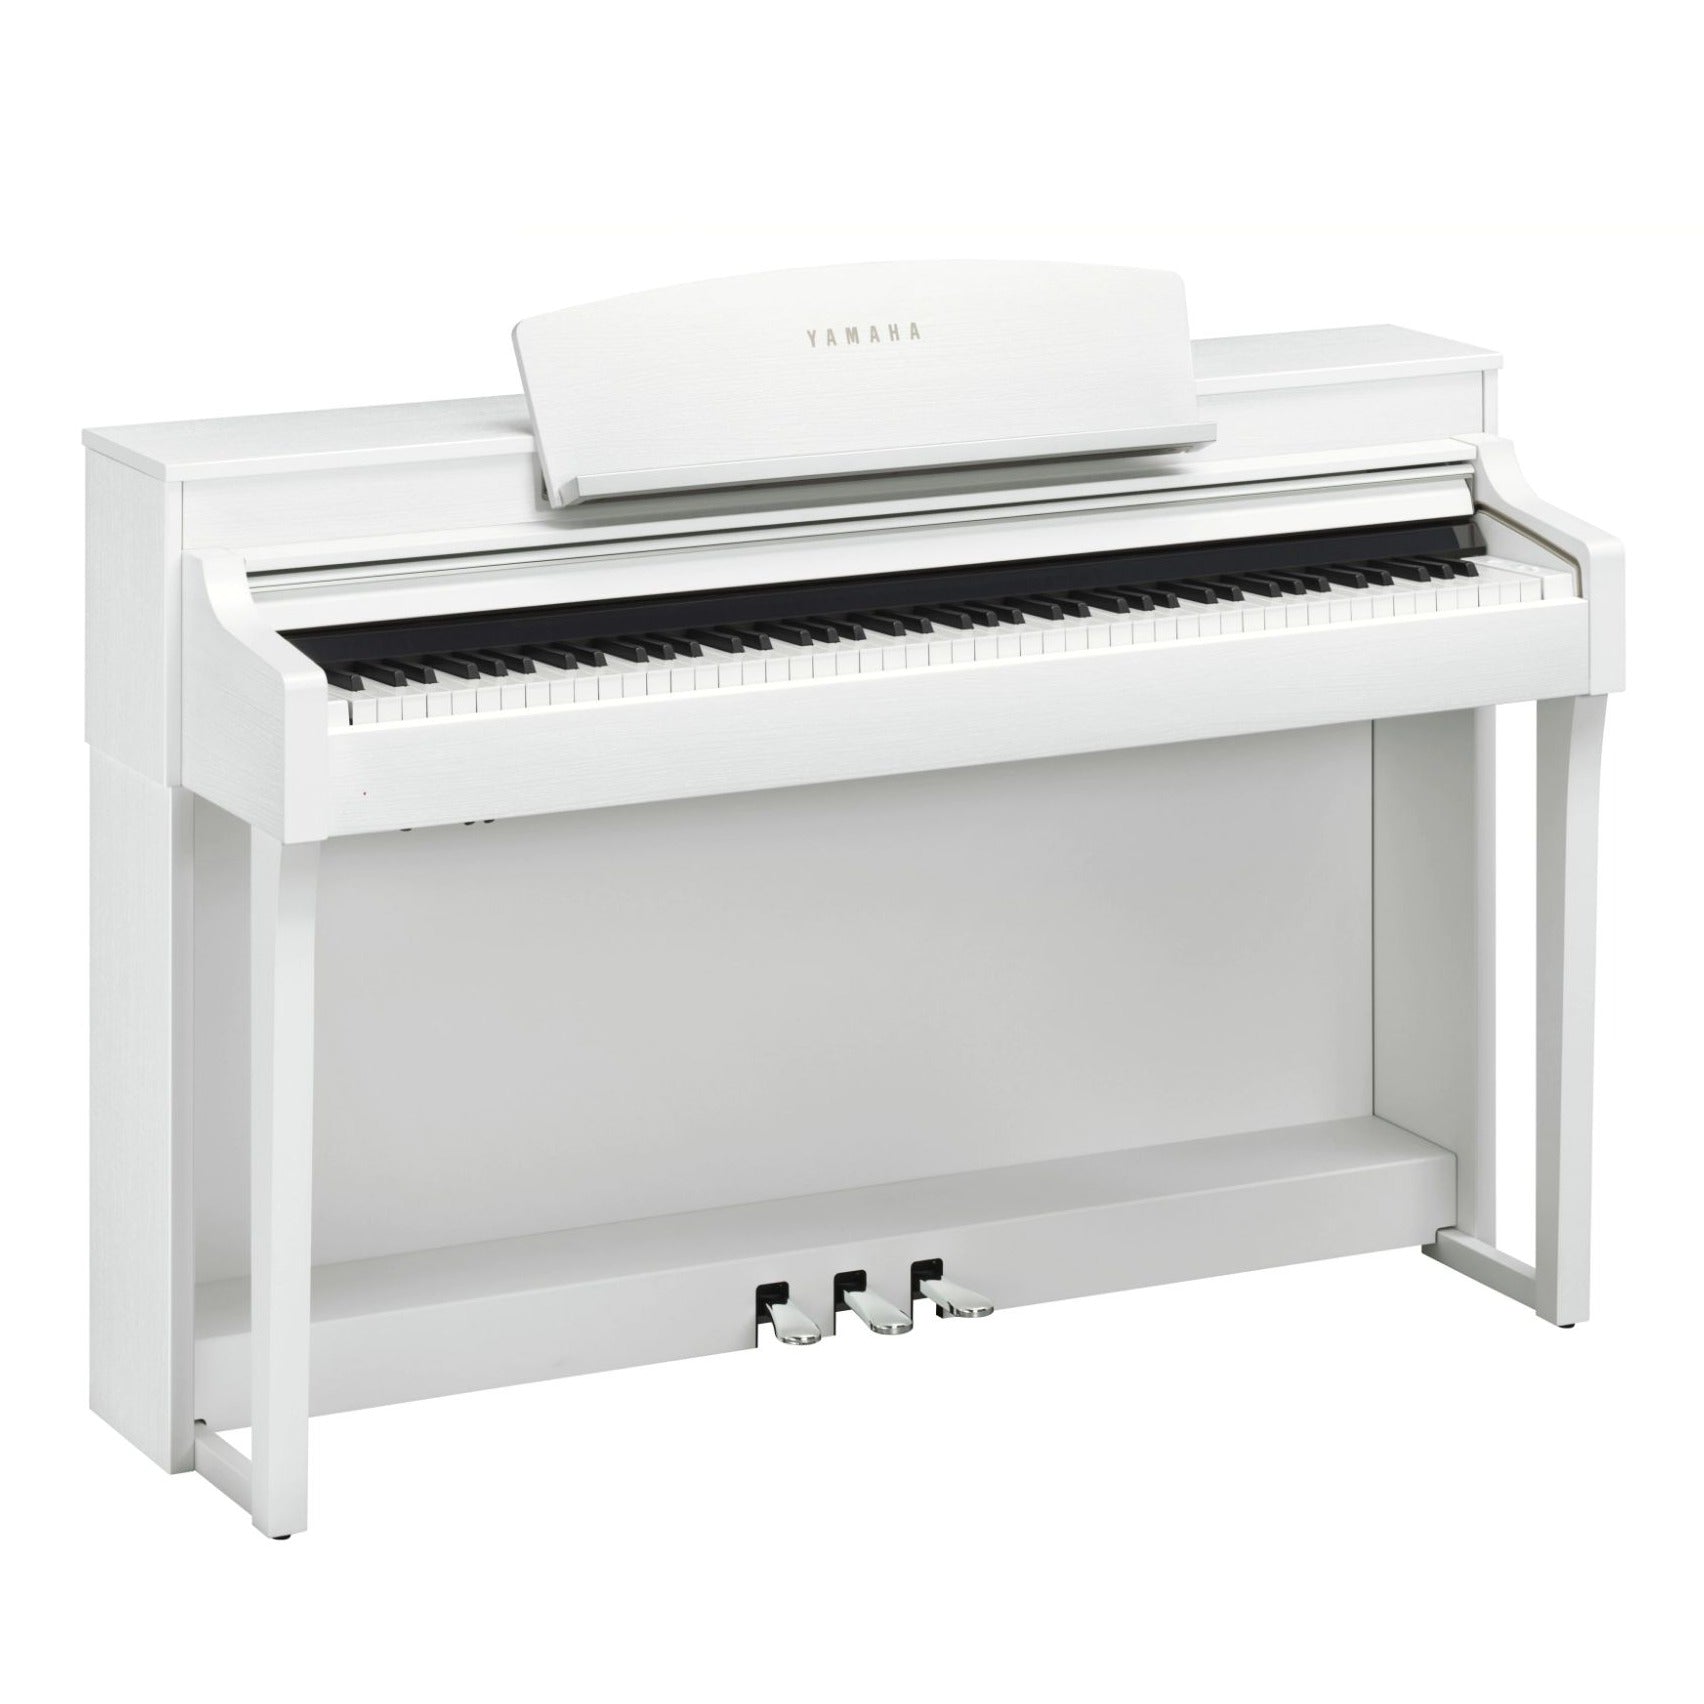 Yamaha Clavinova CSP-150 Digital Piano with Bench